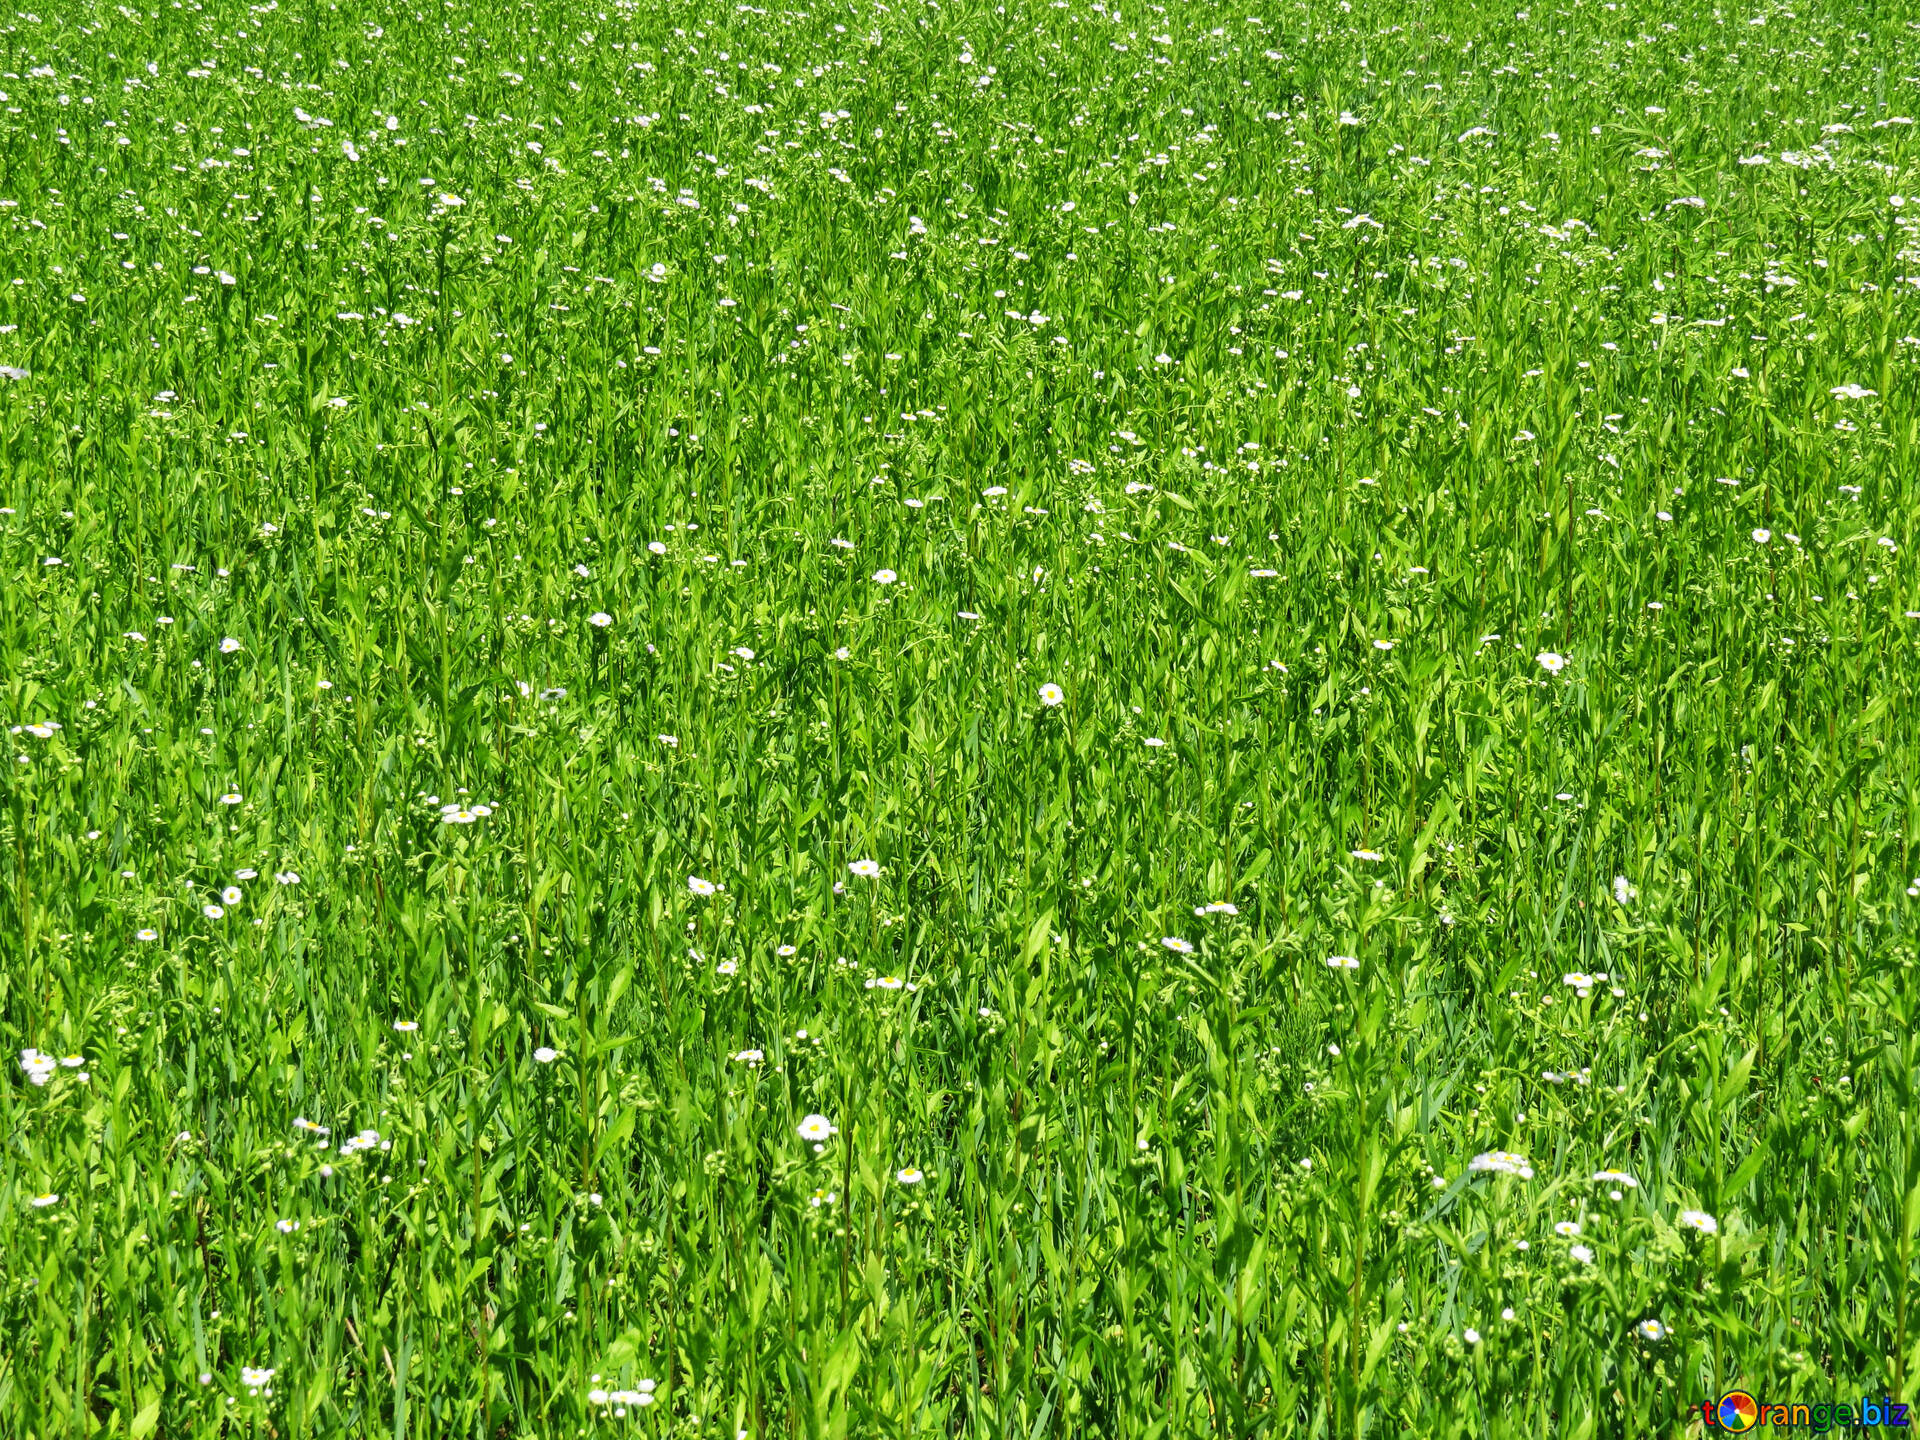 Lawn grass image green carpet grass images grass № 24994 | torange.biz